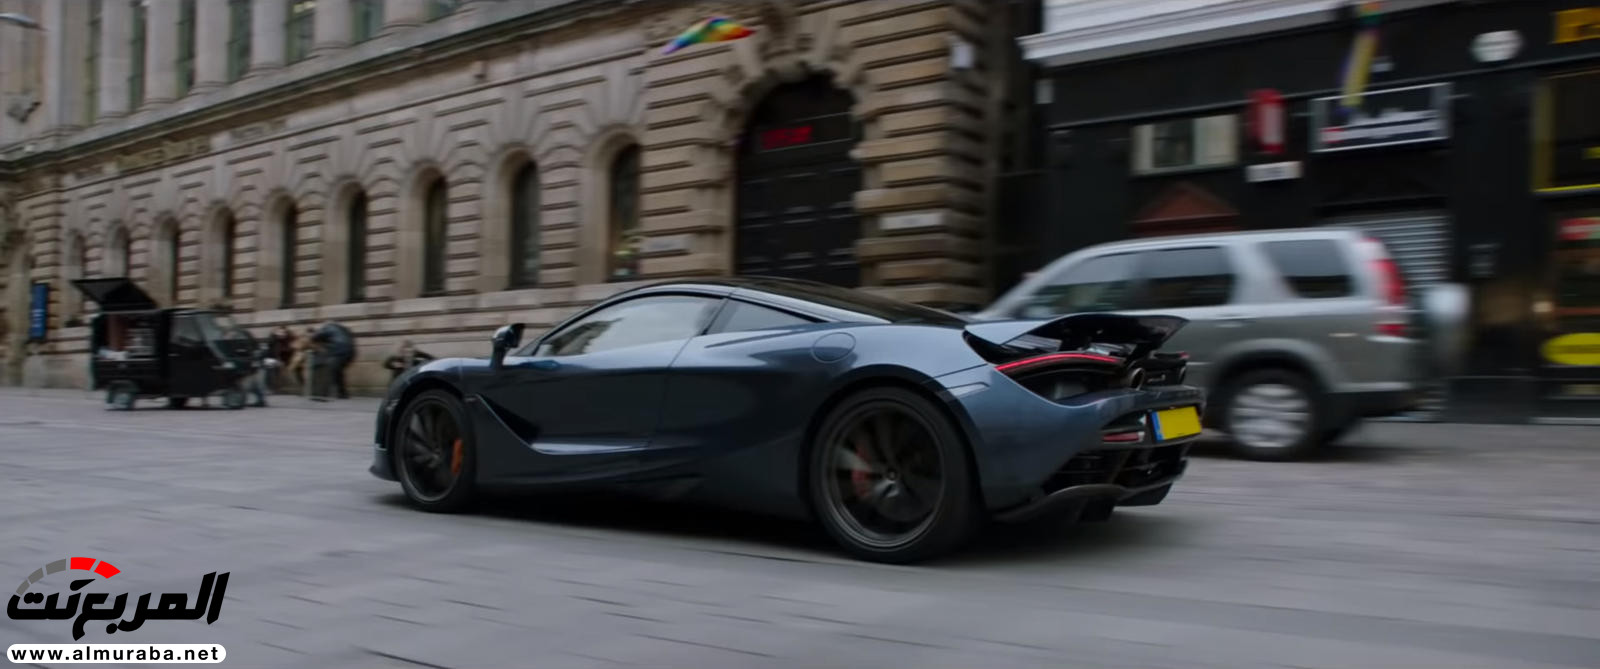 "بالفيديو والصور" لن تصدق مشاهد الأكشن مع السيارات في فيلم Fast & Furious: Hobbs & Shaw 8